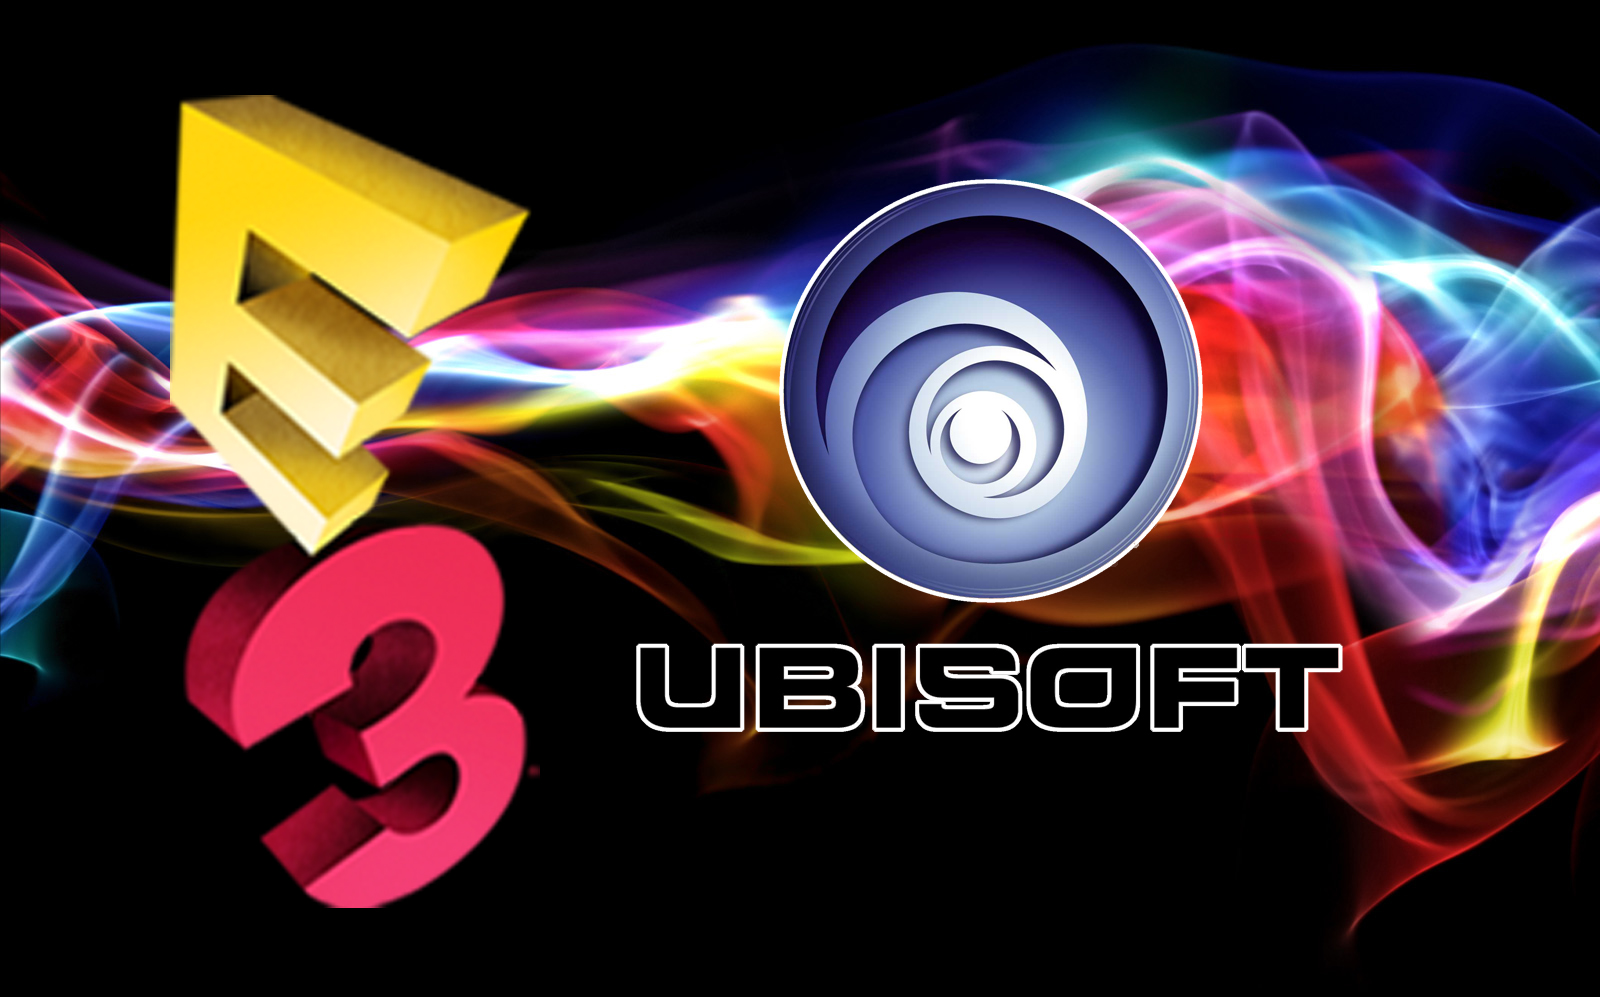 Ubisoft E3 2013 Liveblog